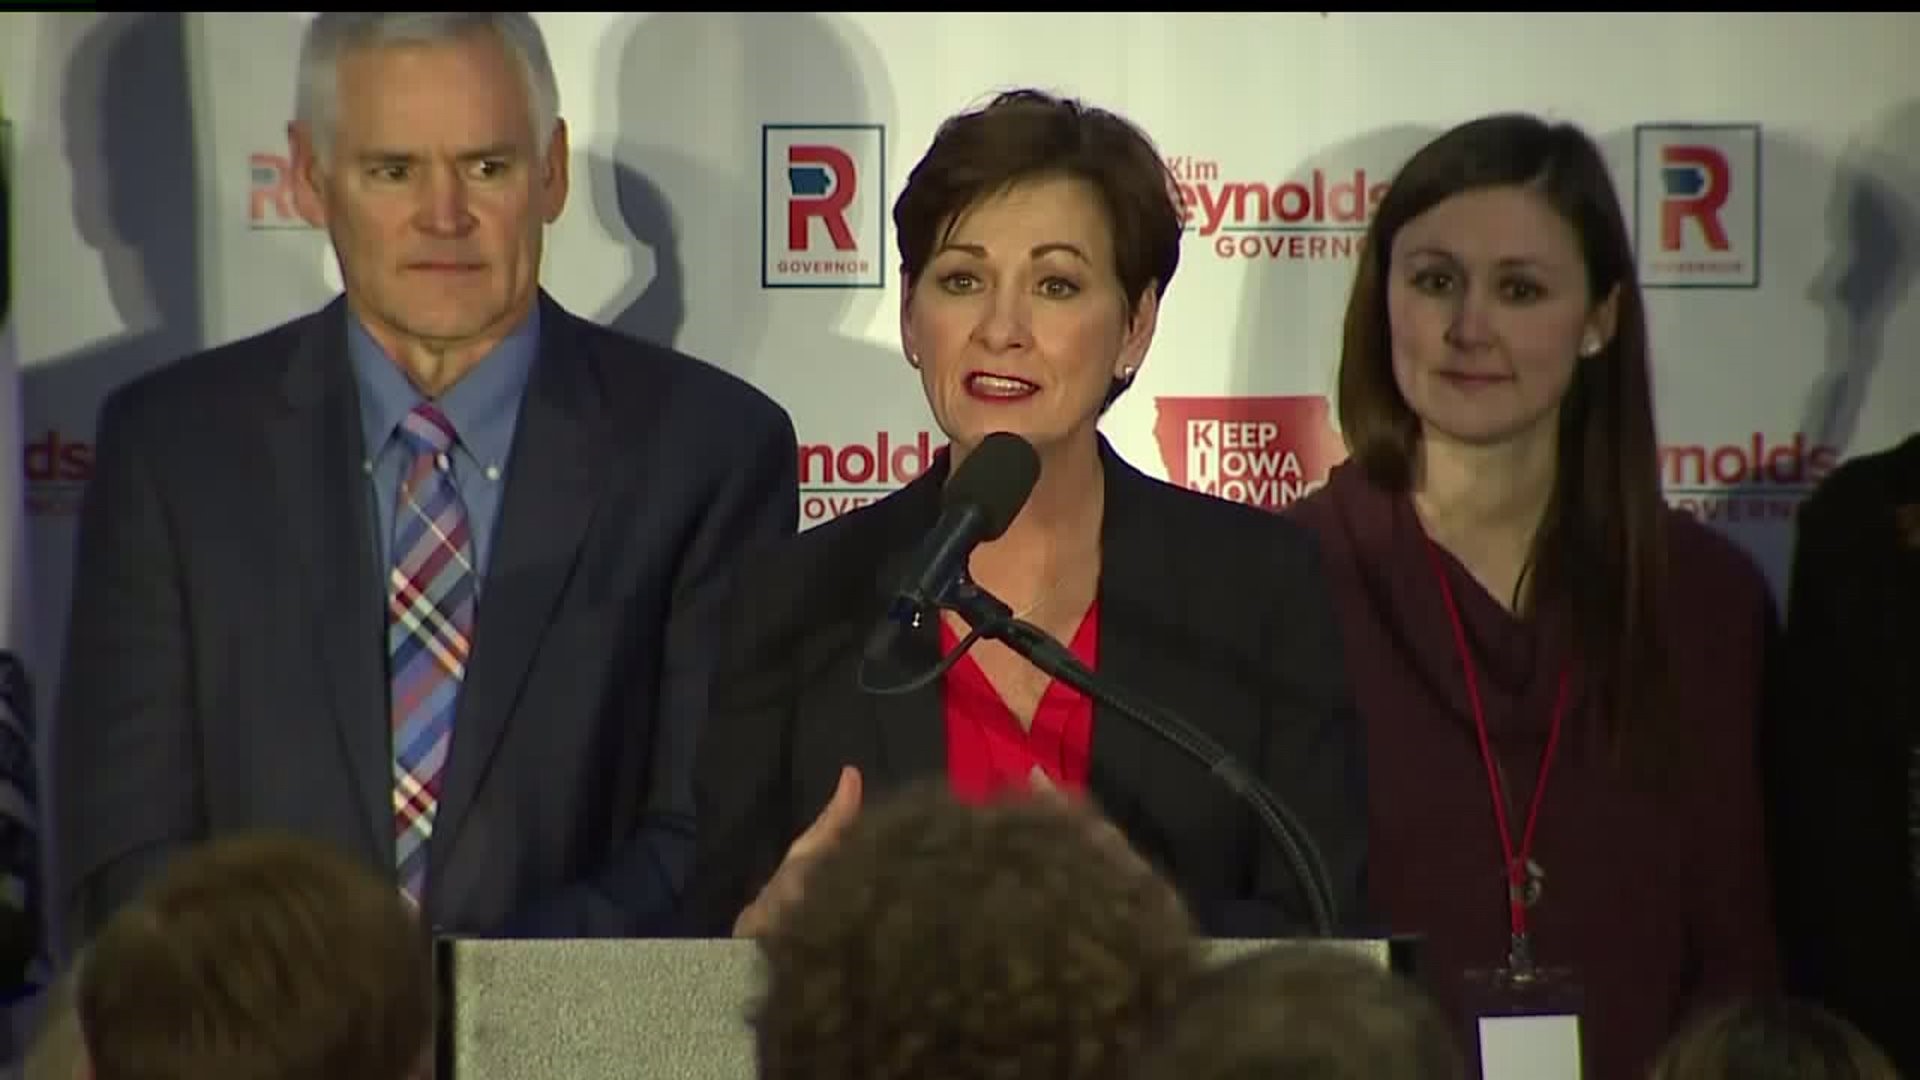 Kim Reynolds Wins Iowa`s Gubernatorial Election